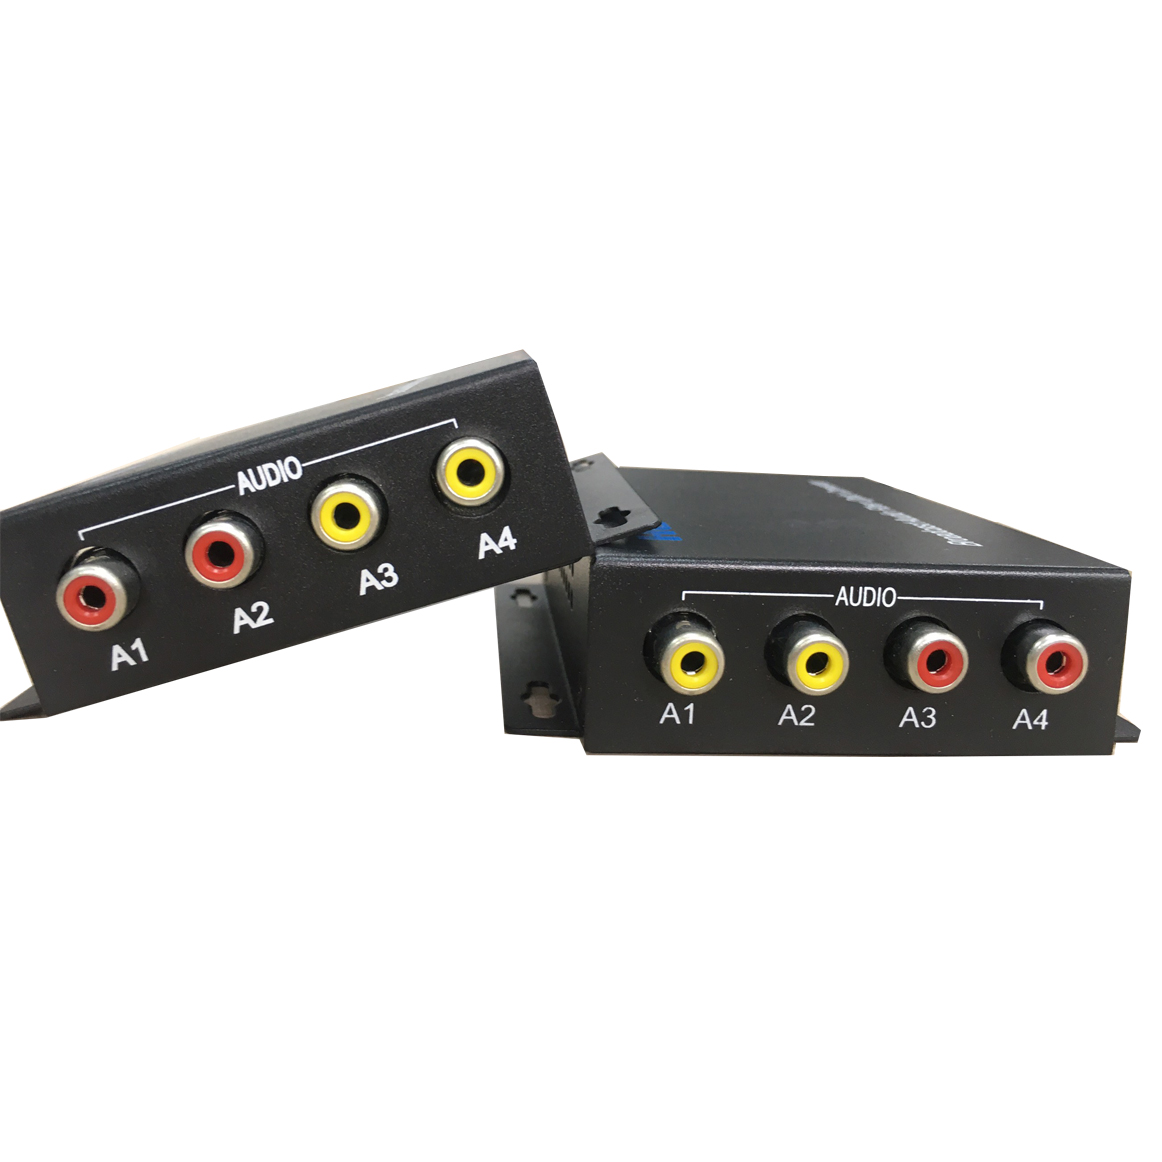 Bộ chuyển đổi audio sang quang 2 chiều Ho-link HL-2A2S-20T/R ( 2 thiết bị) - Hàng Chính Hãng